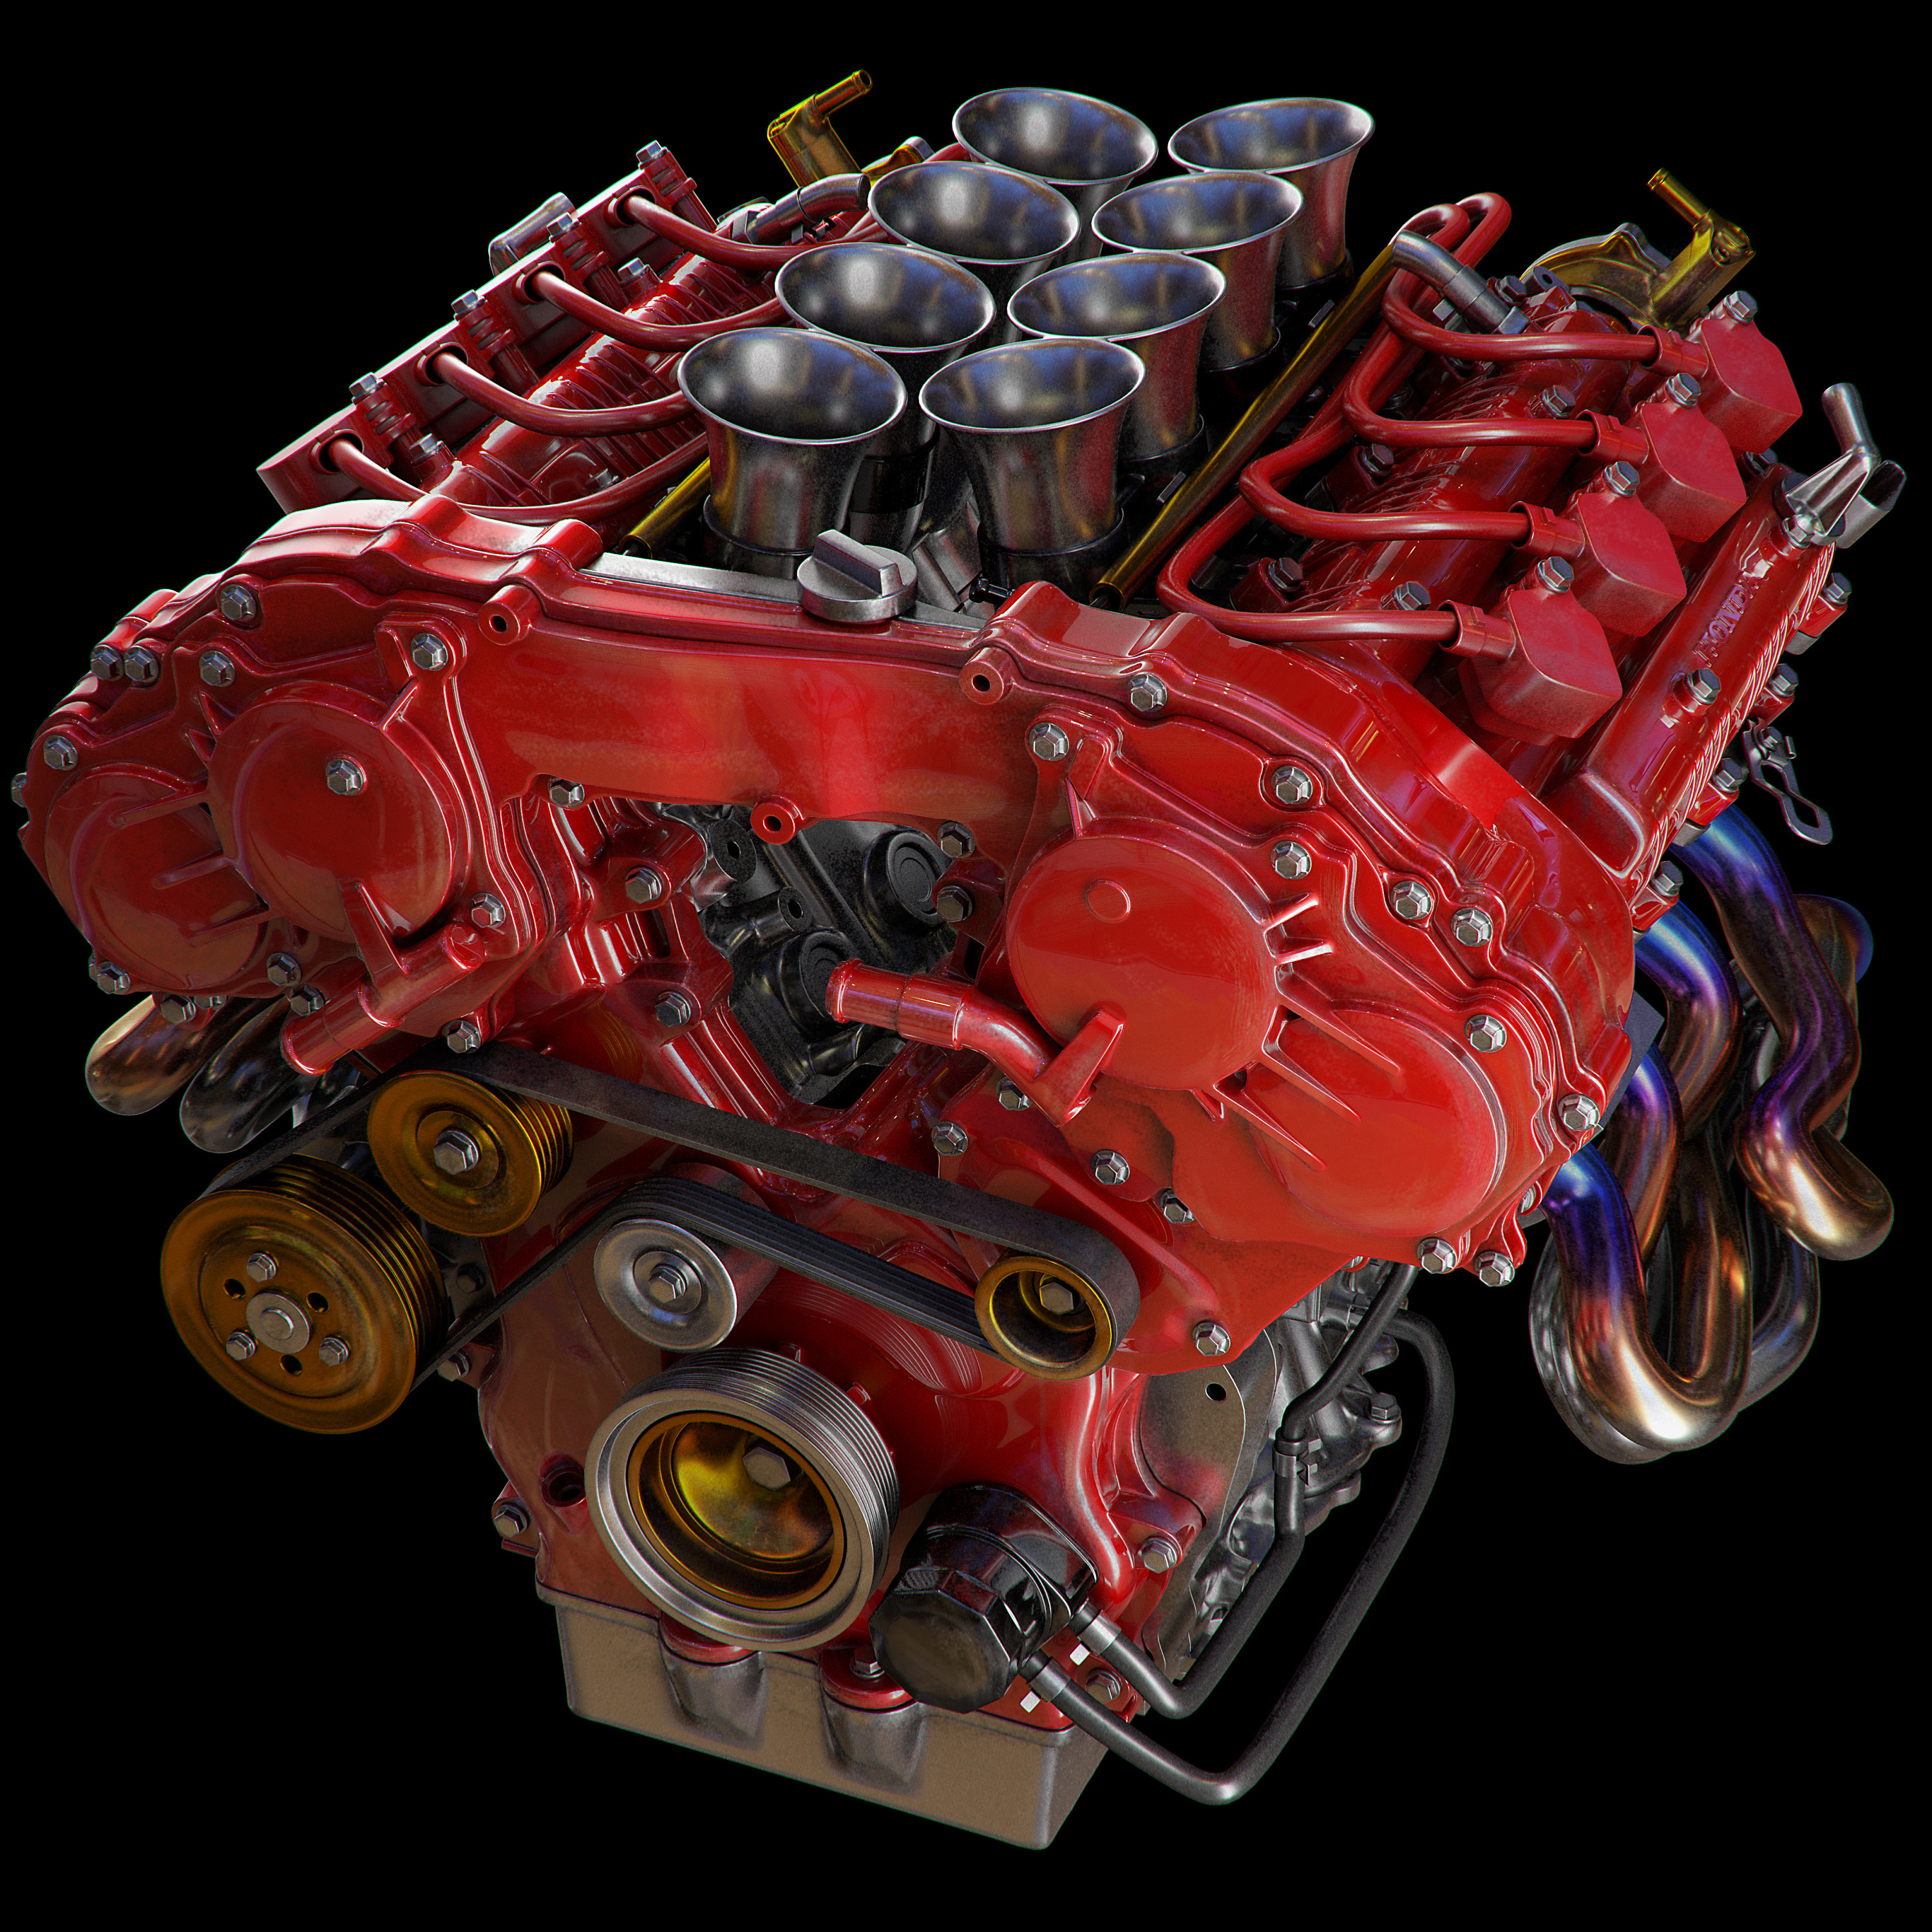 v8 engine